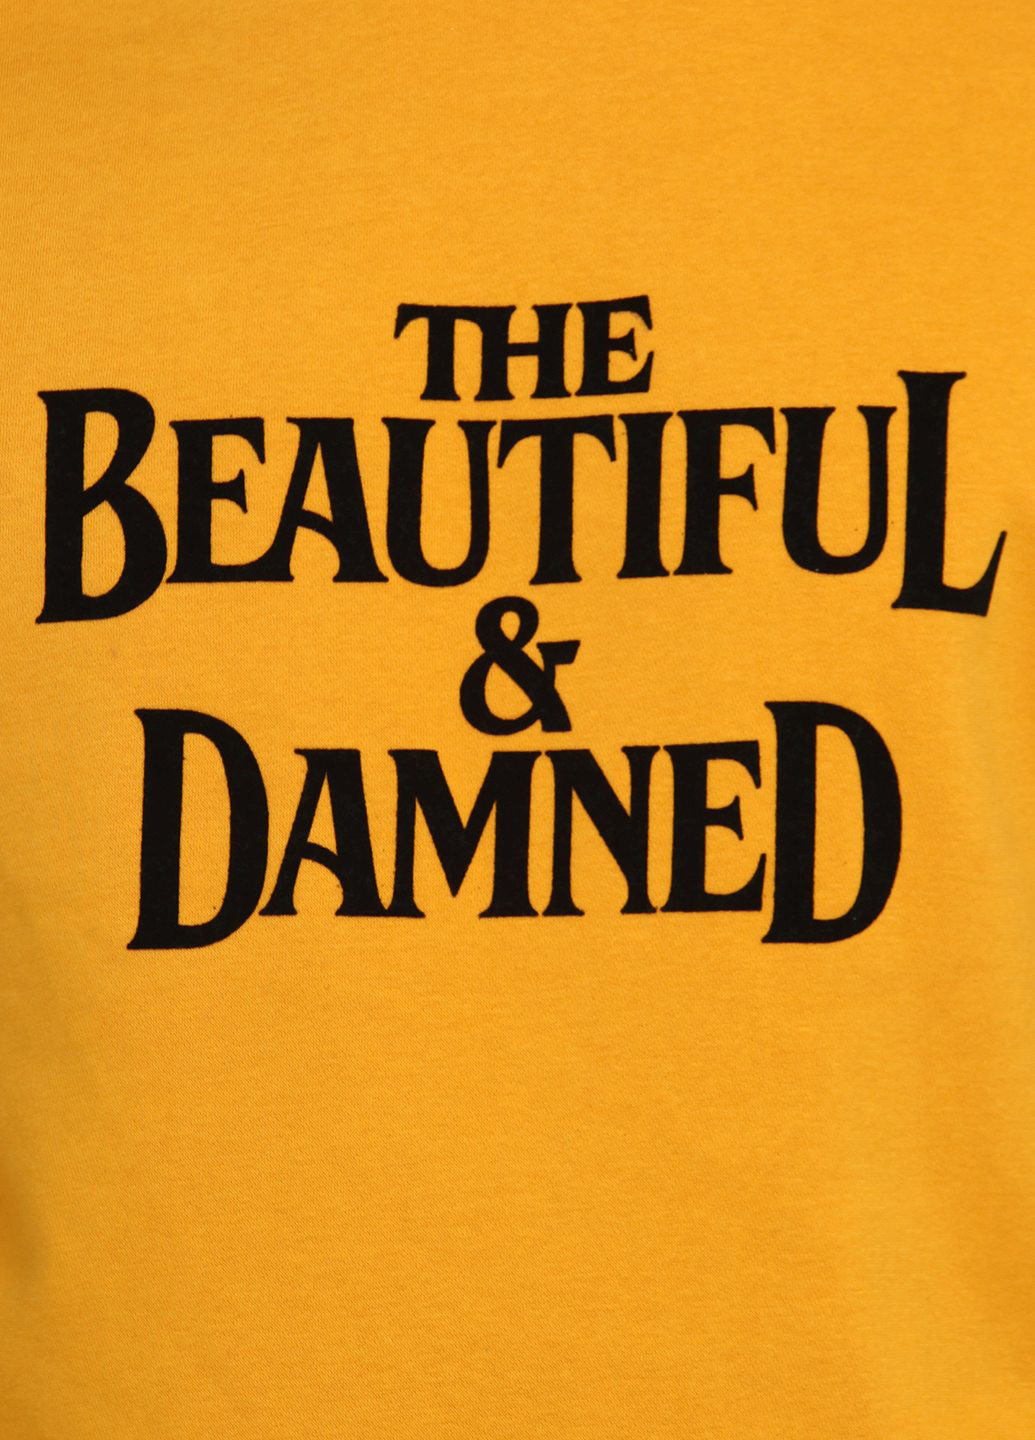 Свитшот H&M - Прямой крой надпись желтый кэжуал трикотаж, хлопок - (207307222)